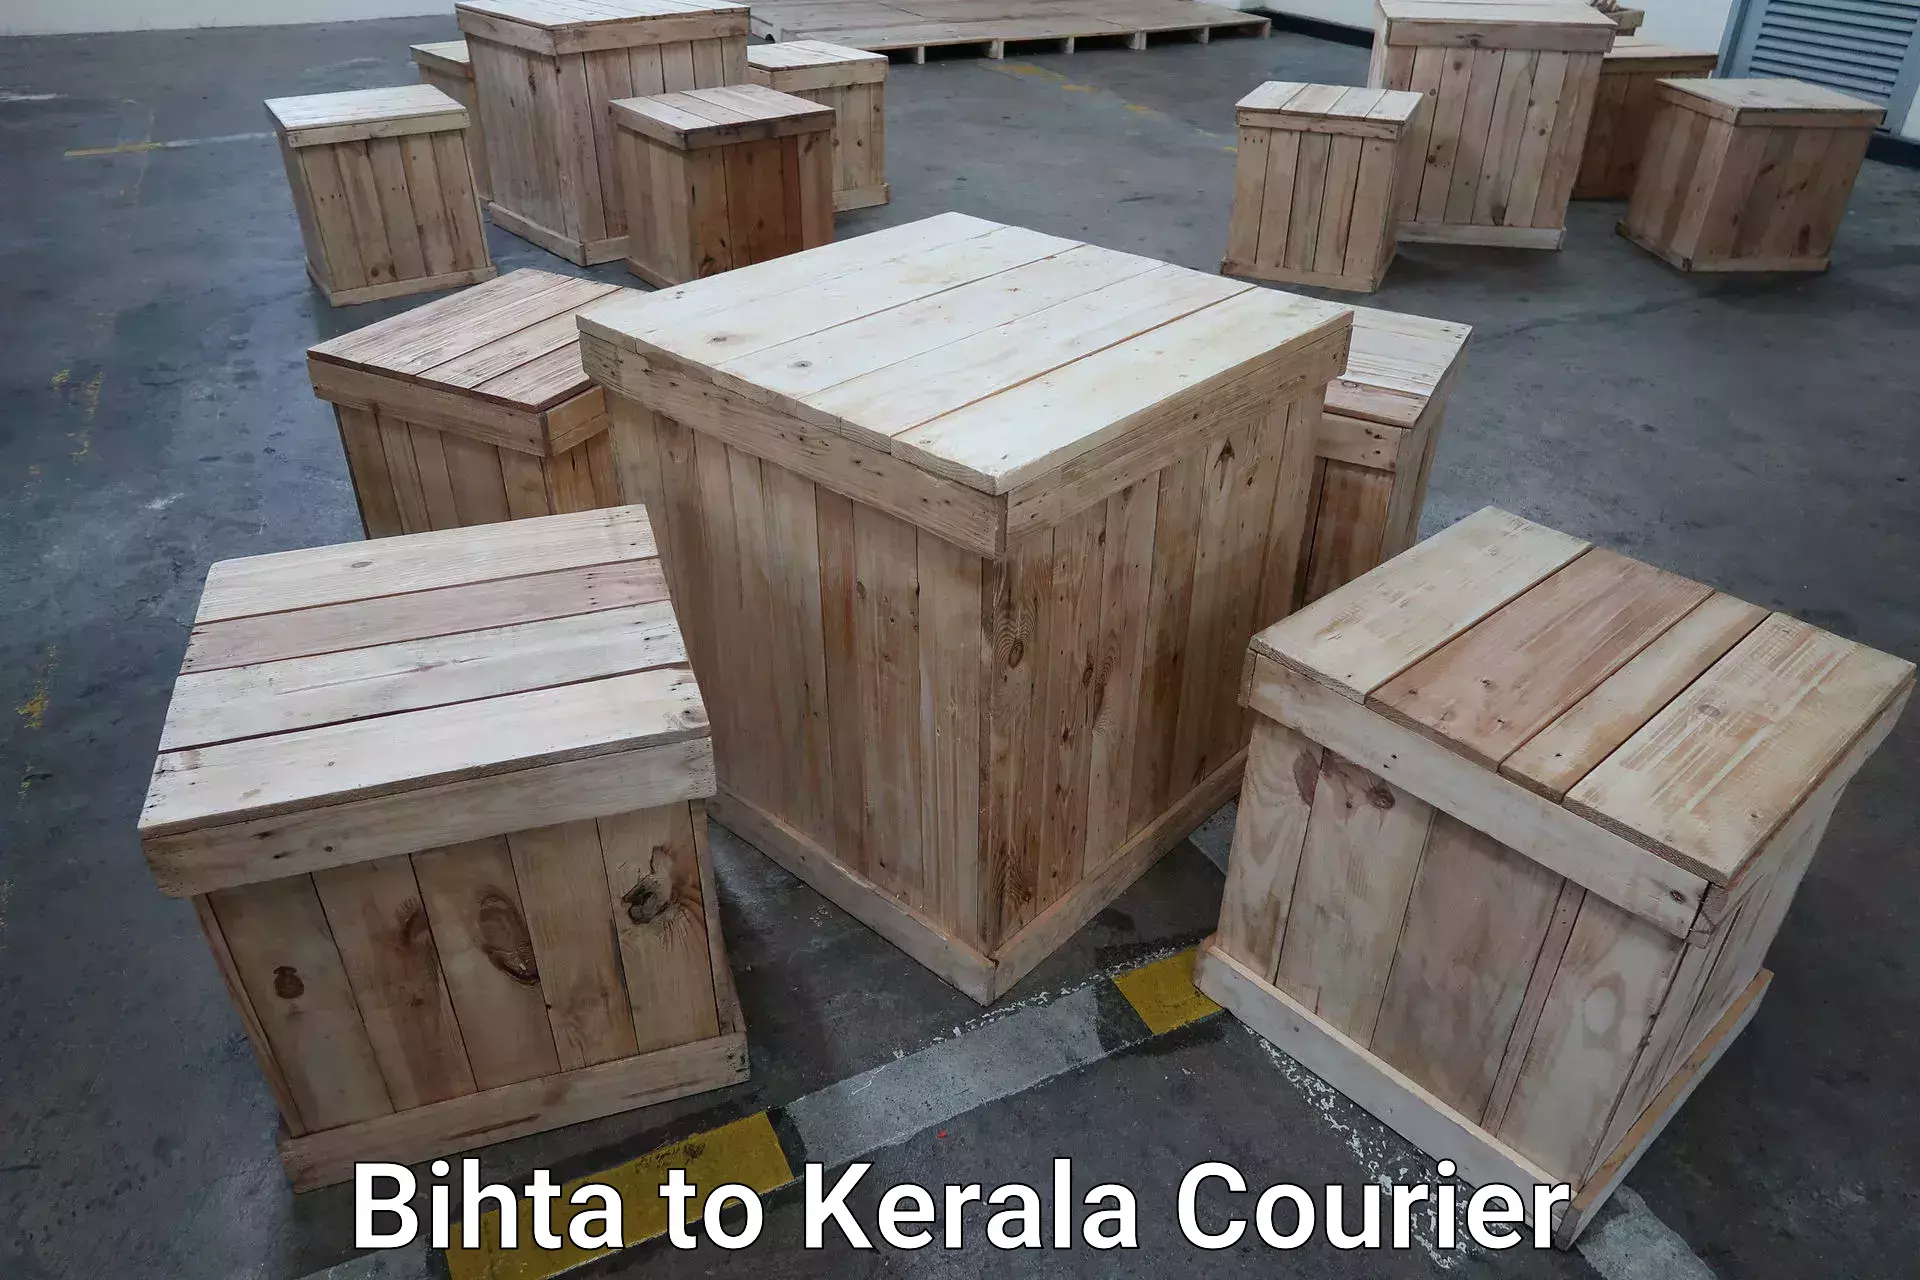 Same day baggage transport Bihta to Kerala